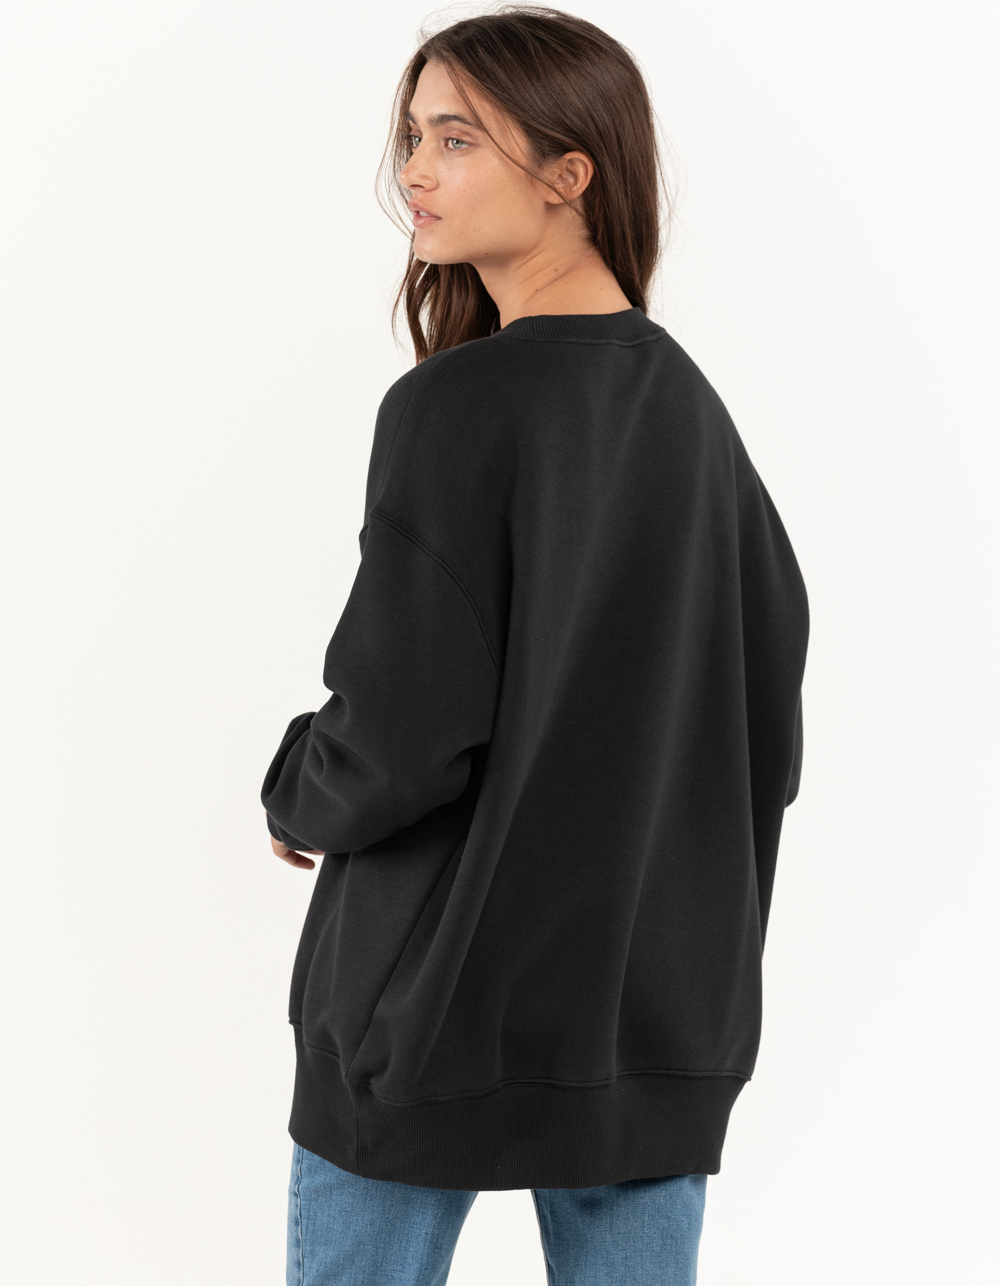 NIKE Sportswear Womens Oversized Crewneck Sweatshirt - BLACK | Tillys